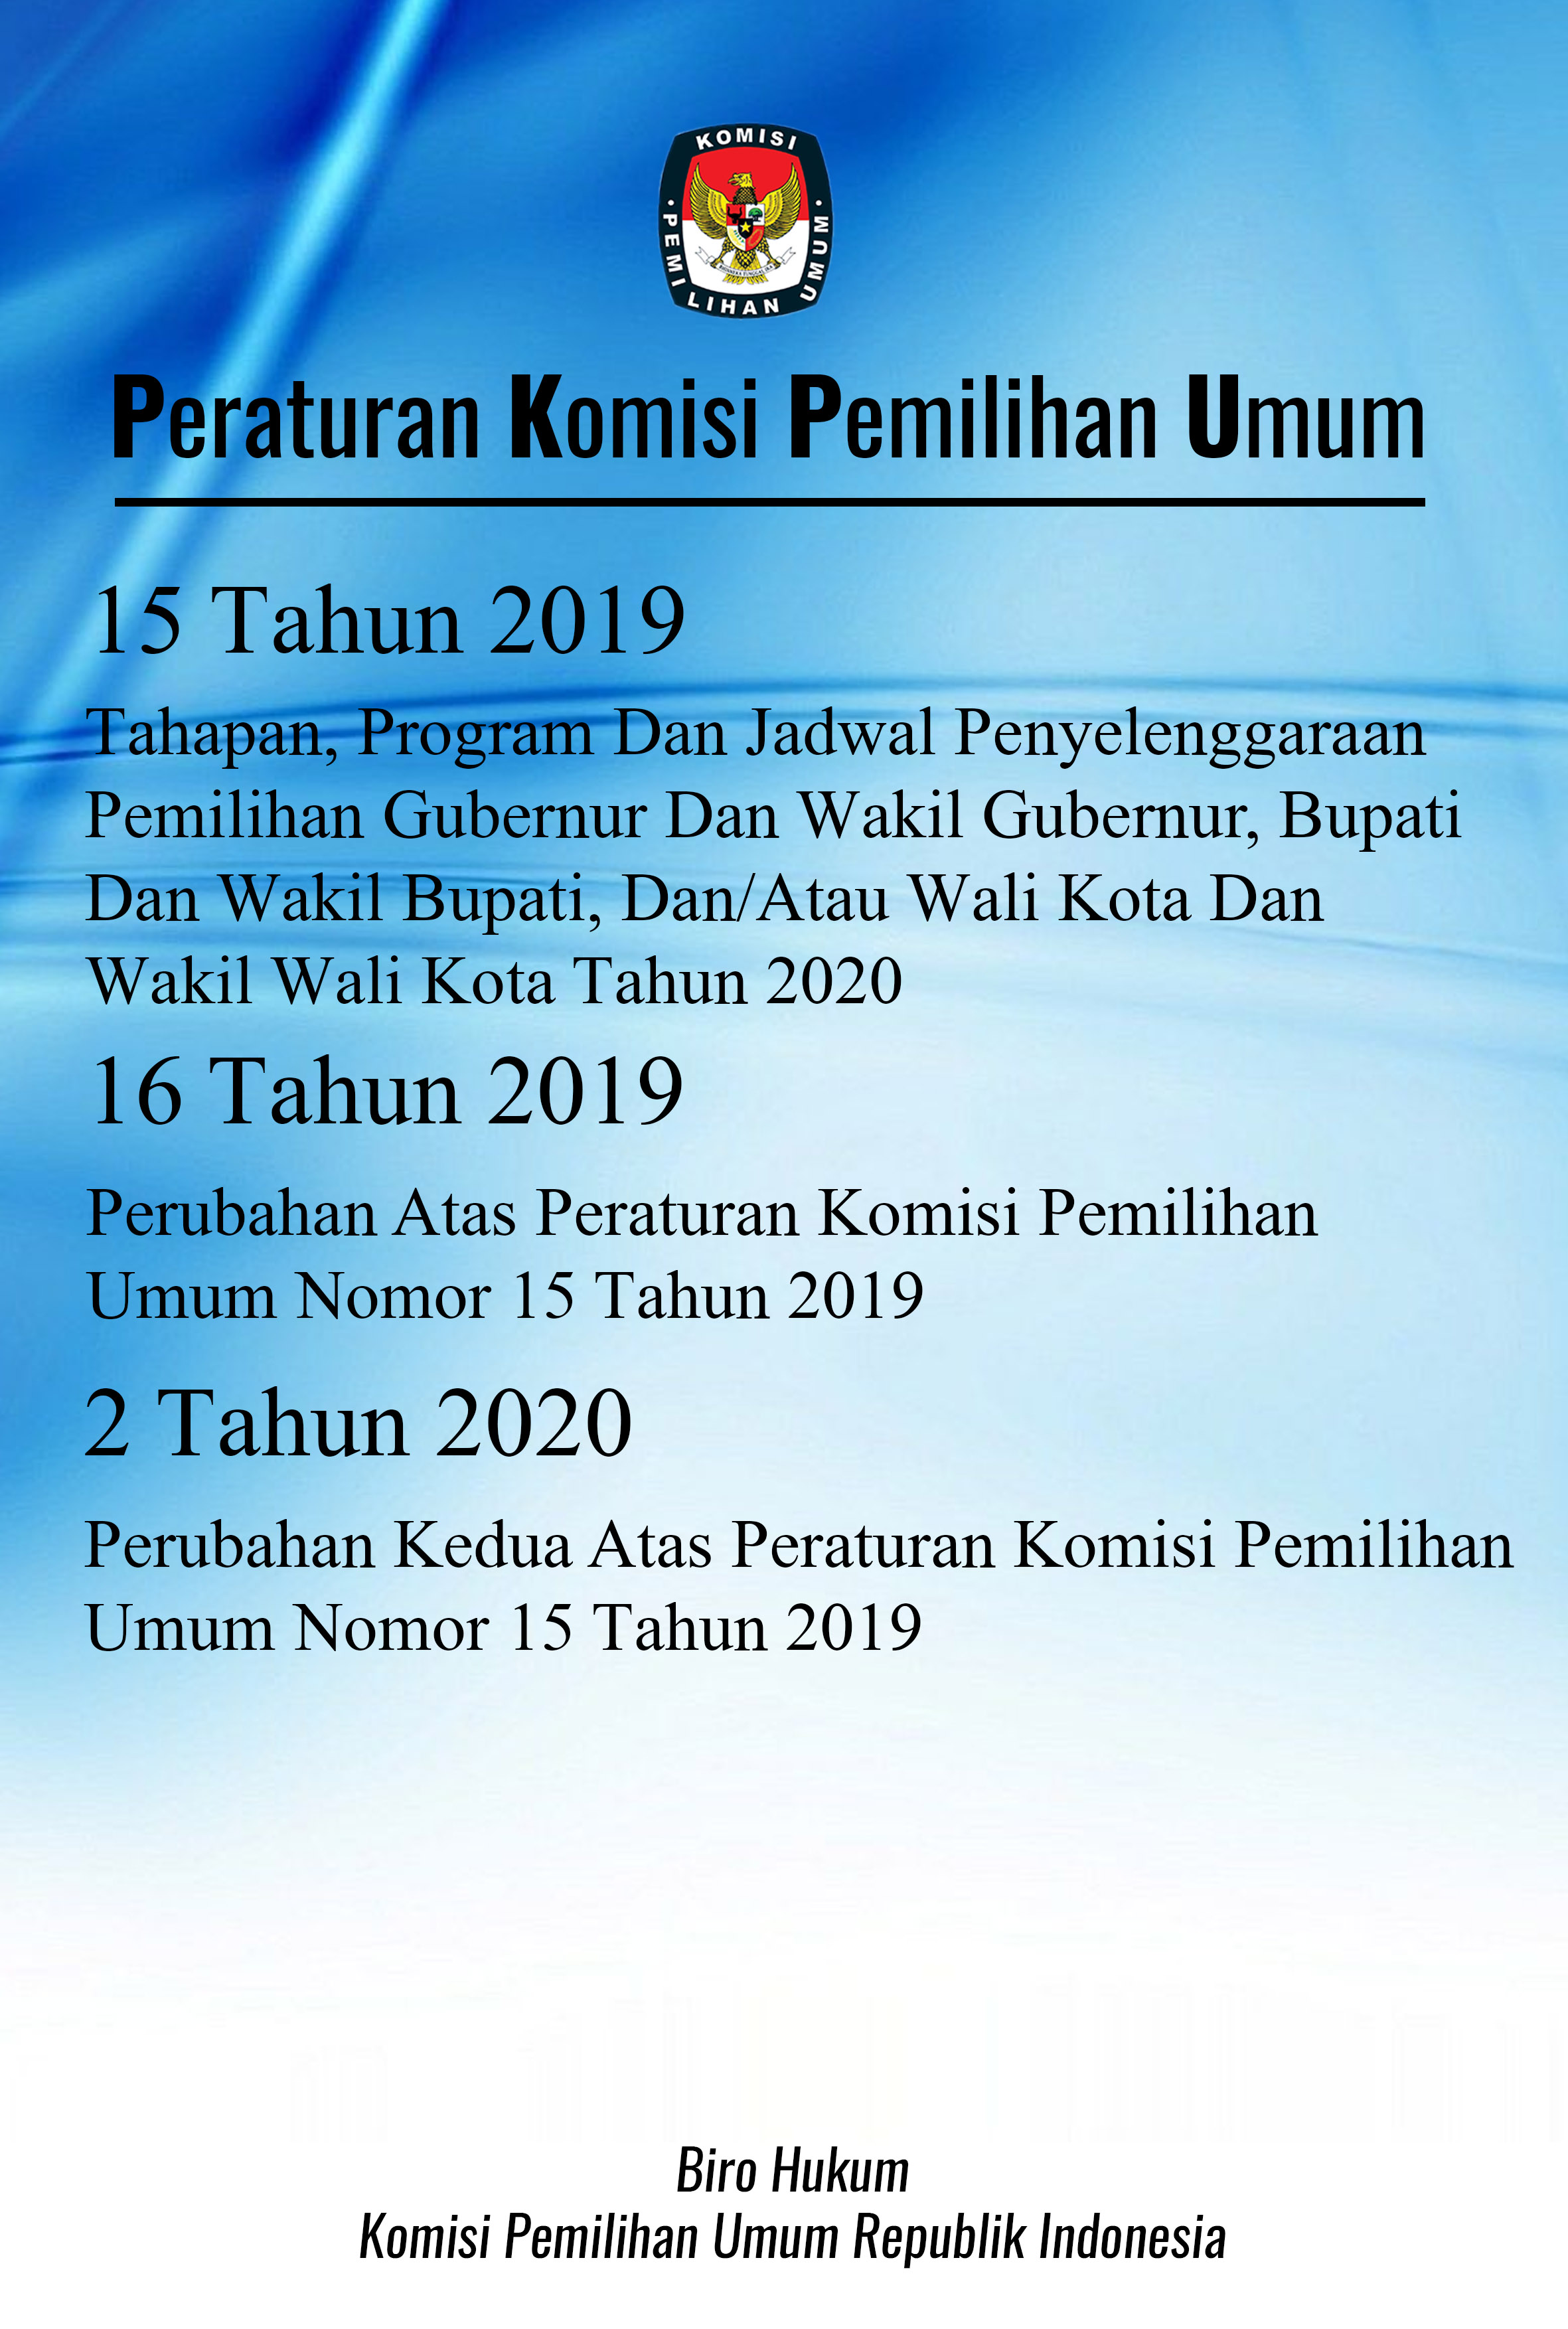 Peraturan komisi pemilihan umum nomor 15 tahun 2019, 16 tahun 2019, dan 2 tahun 2020